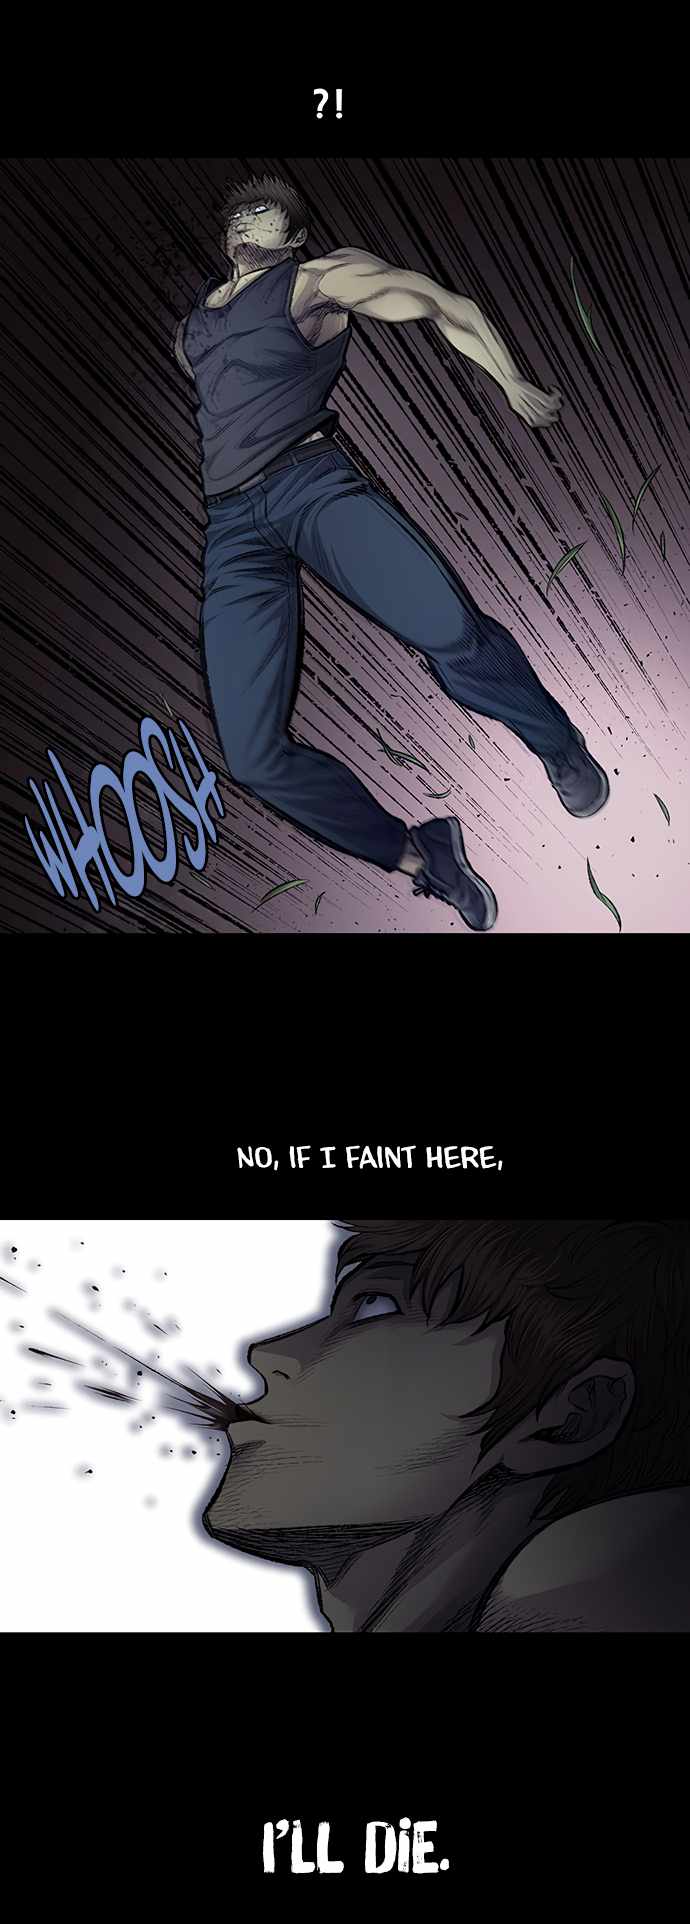 Justice (Vigilante) - Page 2